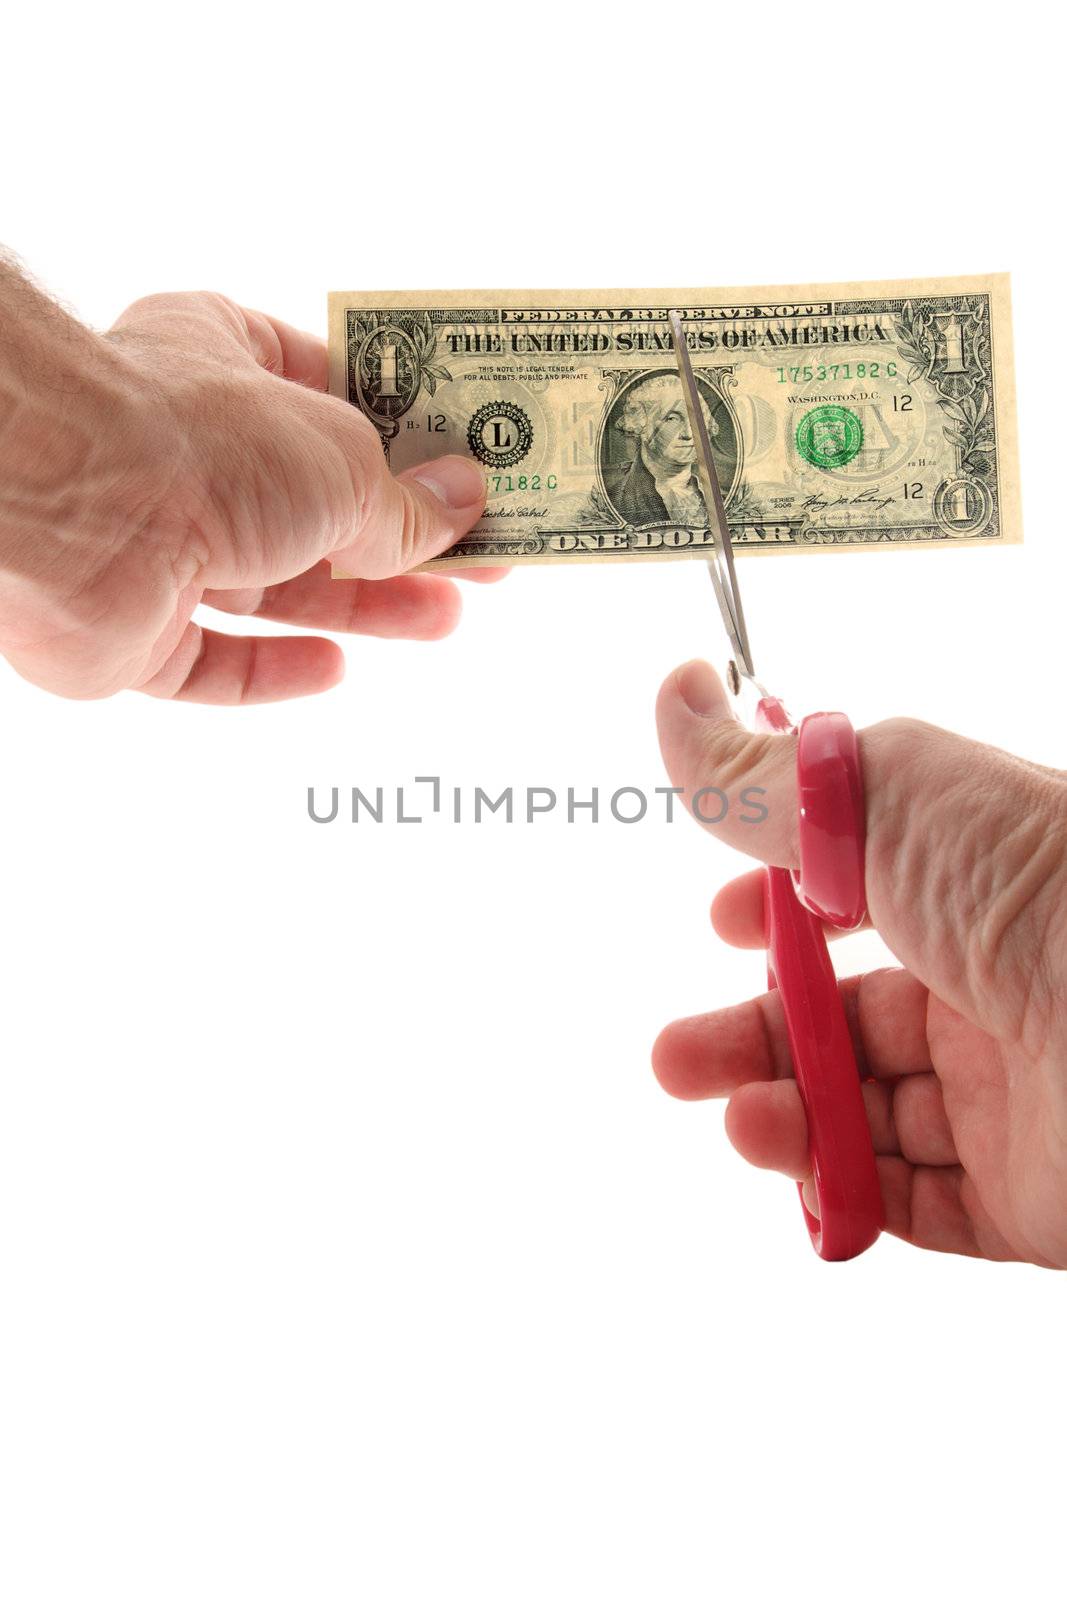 Man using scissors to cut US $1 bill